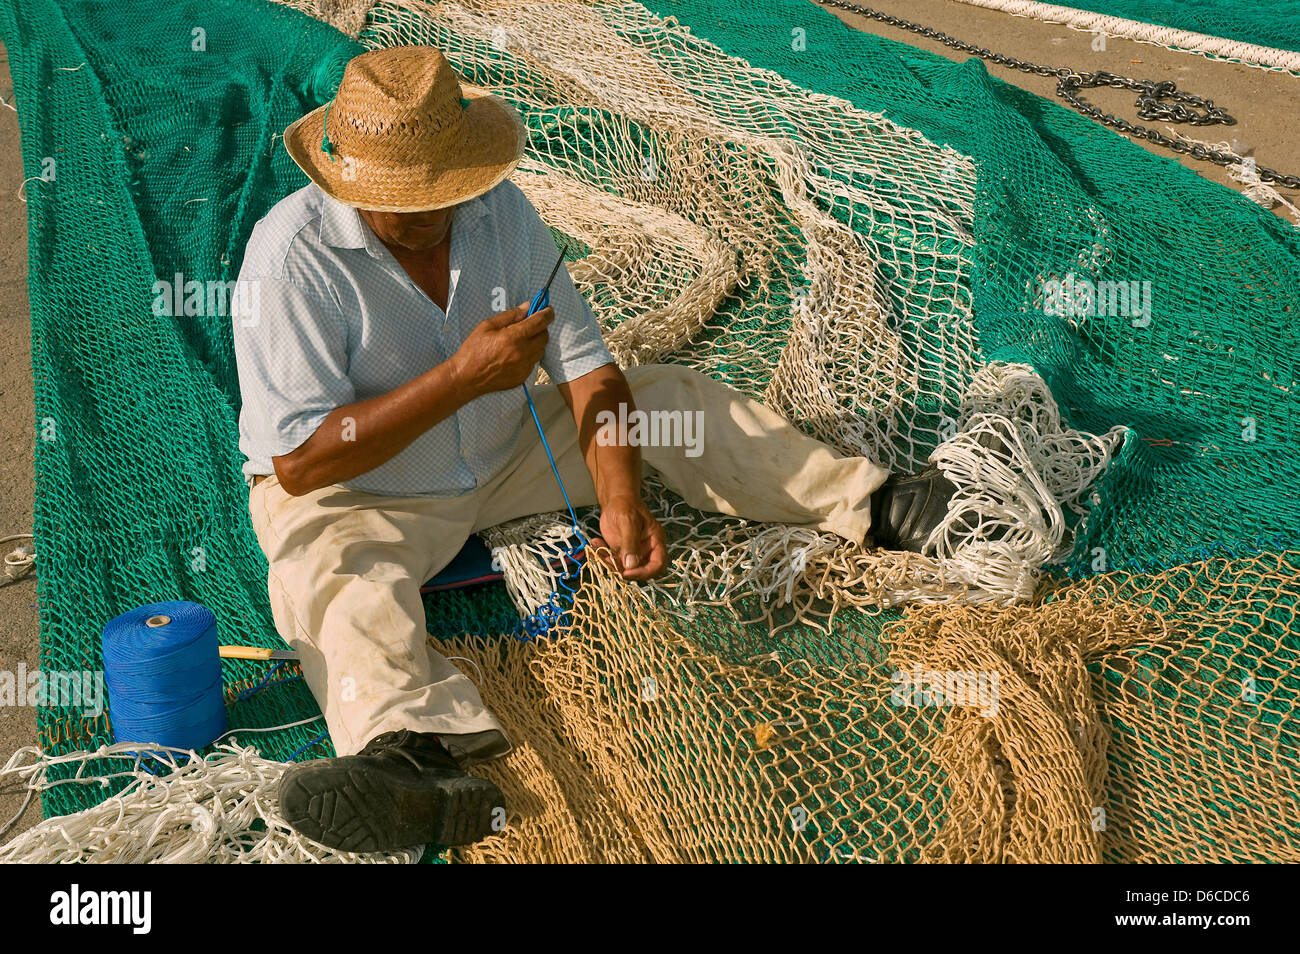 La couture des filets de pêche, Isla Cristina, Huelva-province, région d'Andalousie, Espagne Banque D'Images